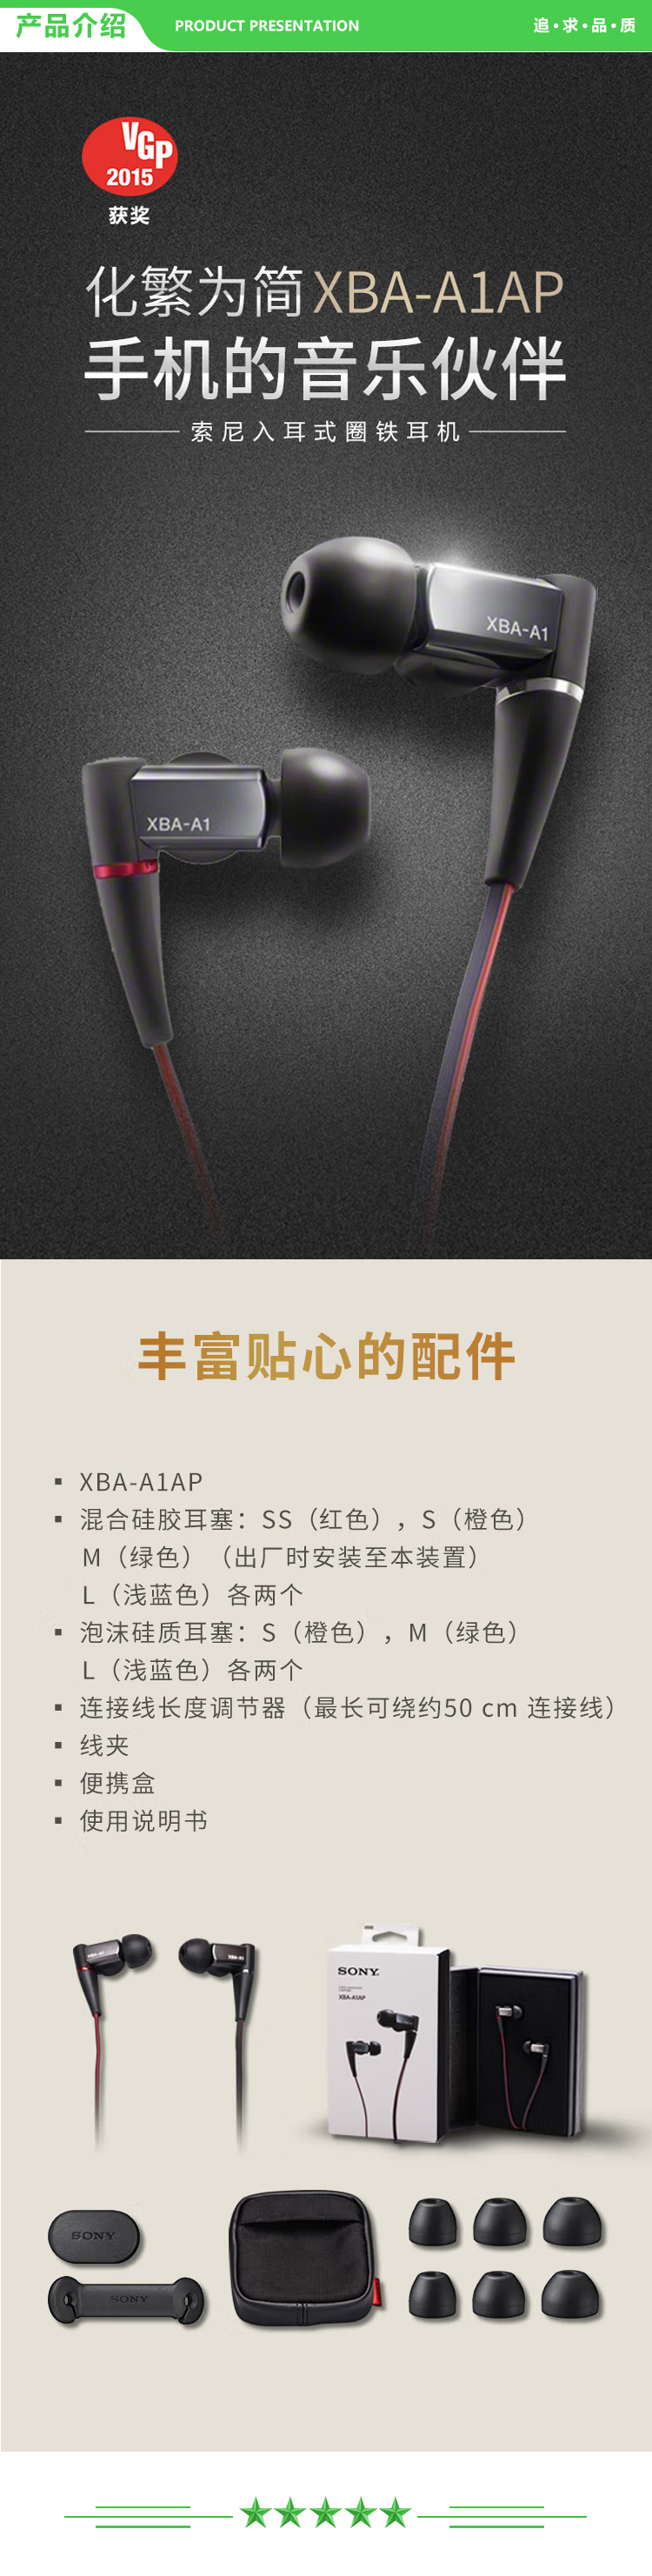 索尼 SONY XBA-A1AP 耳机入耳式通用圈铁低音均衡线控带麦手机耳塞 黑色 .jpg